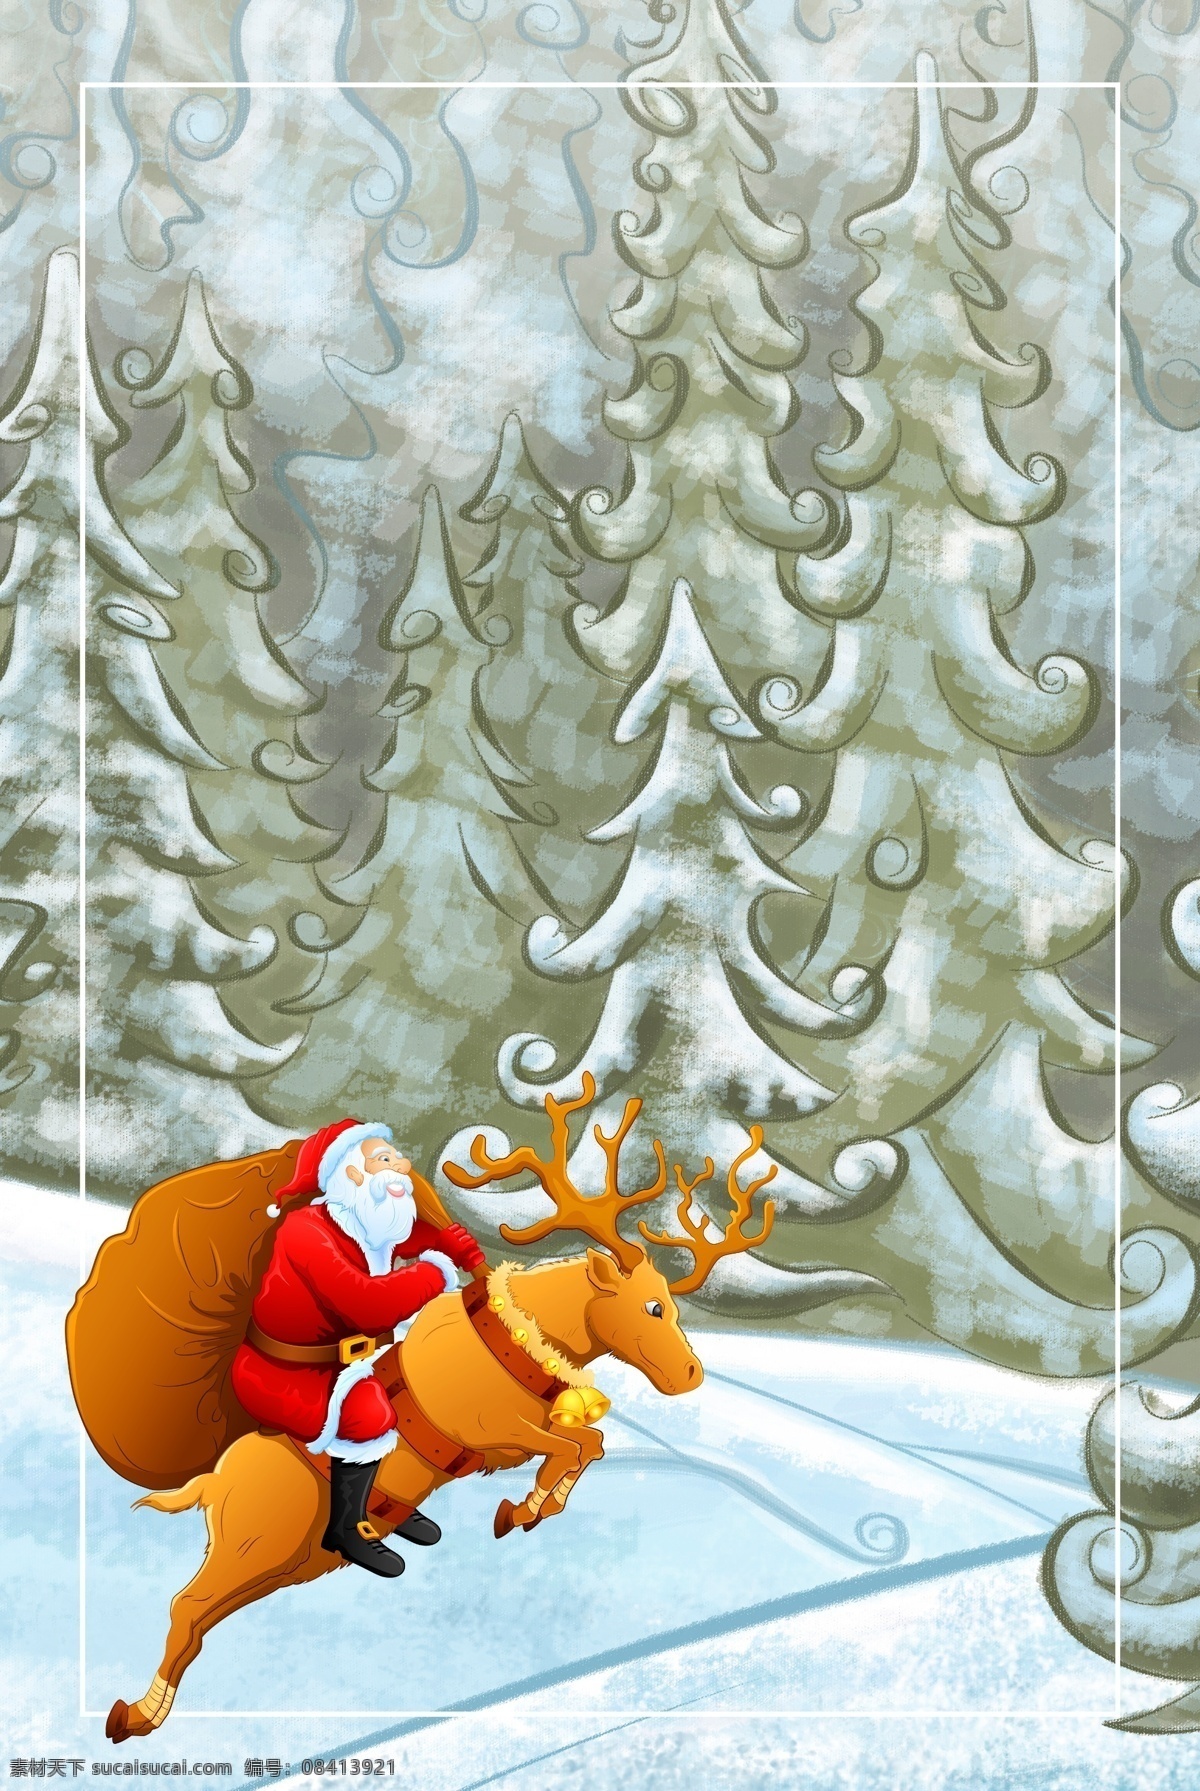 冬季 唯美 手绘 风景 背景 图 文艺 清新 雪天 卡通 圣诞节 广告 背景图 蓝色 紫色